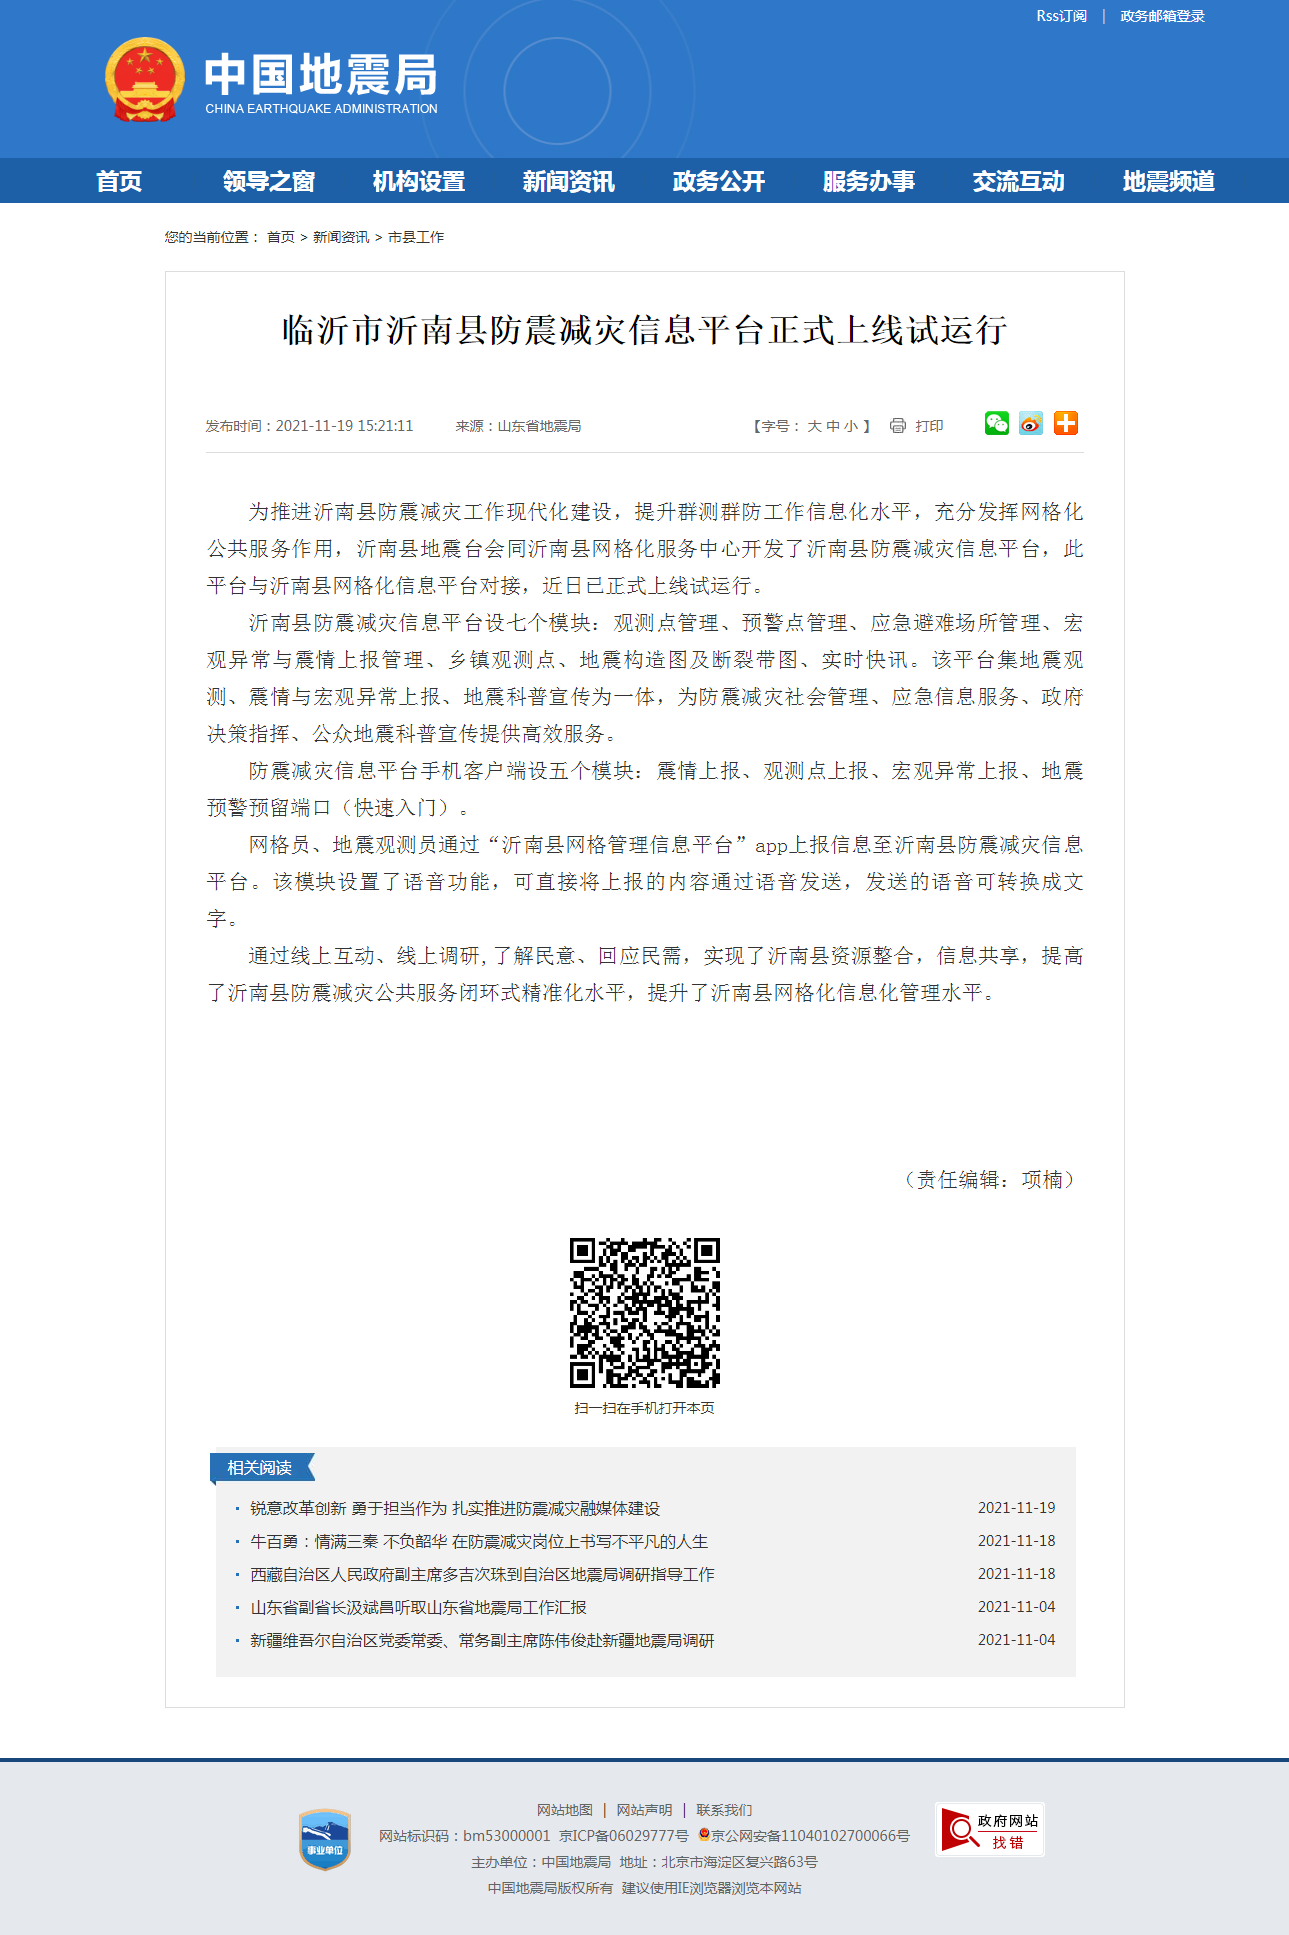 临沂市沂南县防震减灾信息平台正式上线试运行.png